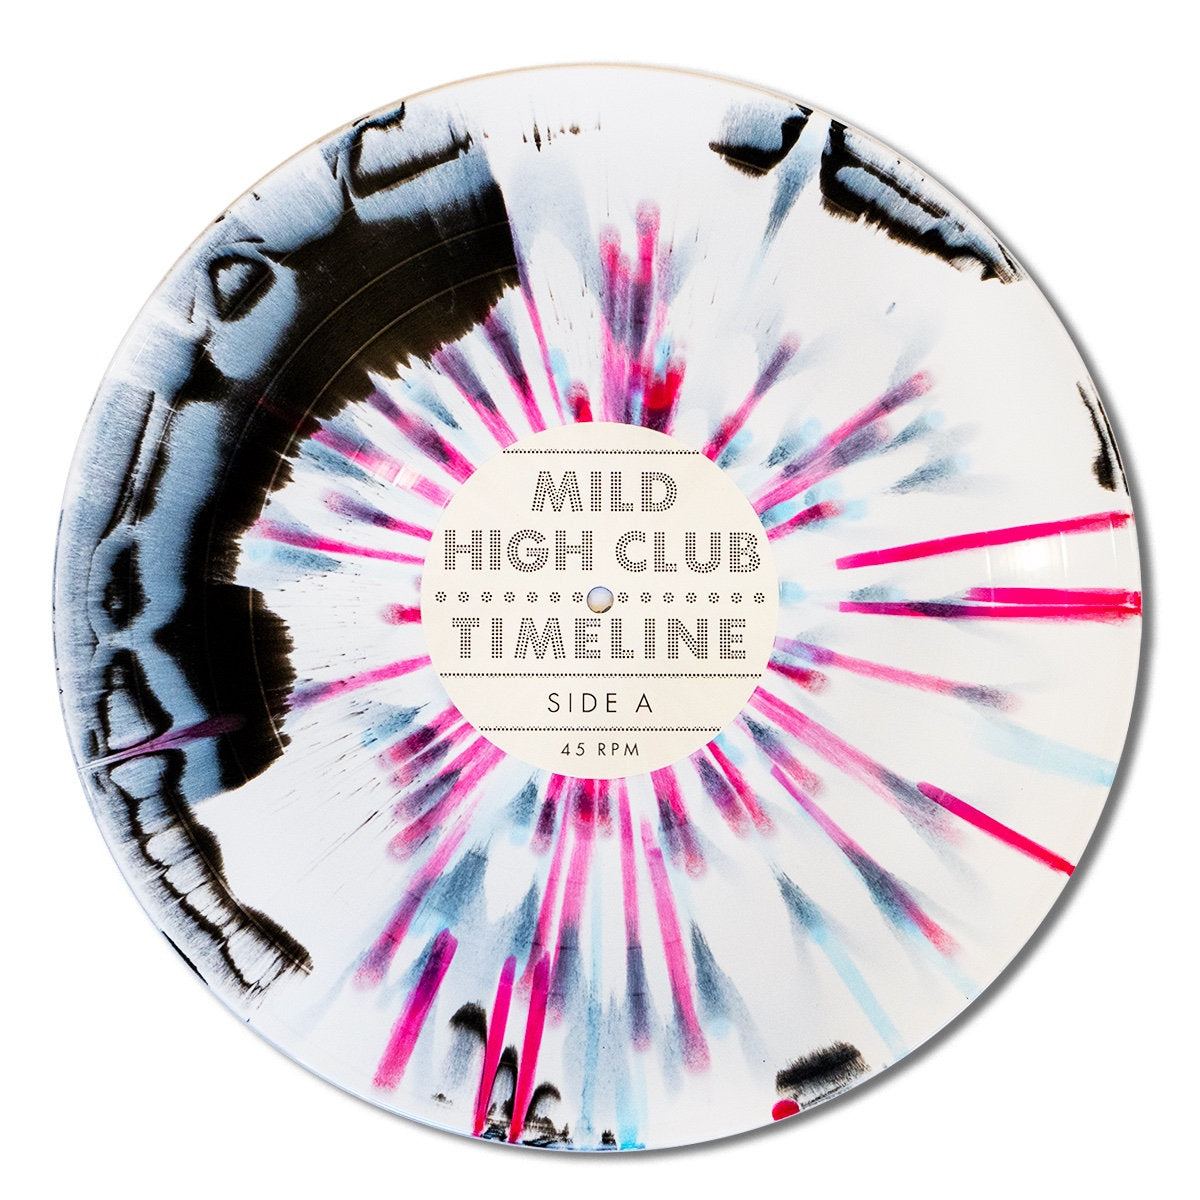 オリジナル盤 Mild High Club レコード 2点セット オリジナル